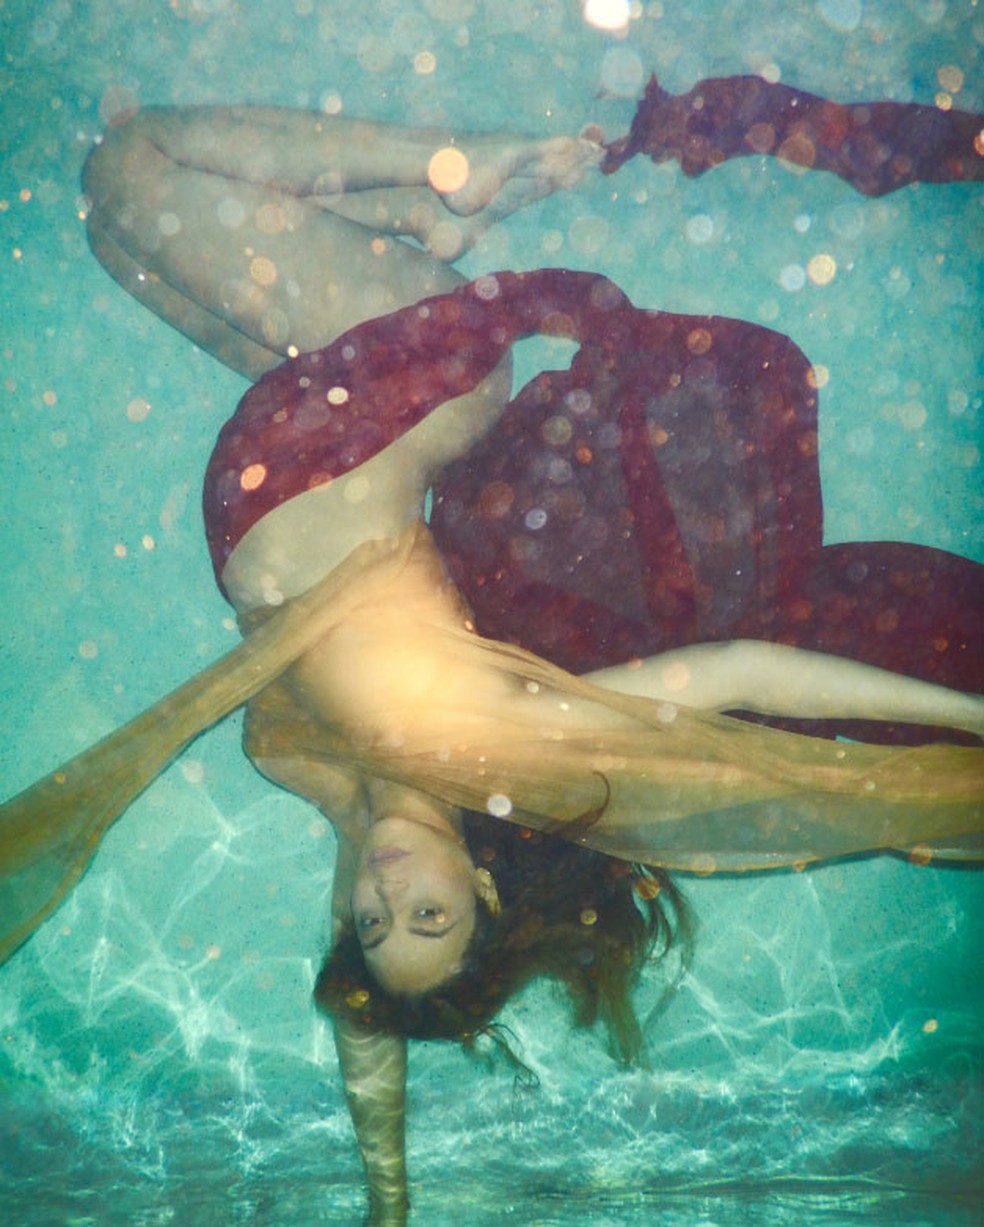 Fotos mostram a cantora nua e embaixo d'água (Foto: Reprodução/Awol Erizku/Site oficial da artista)